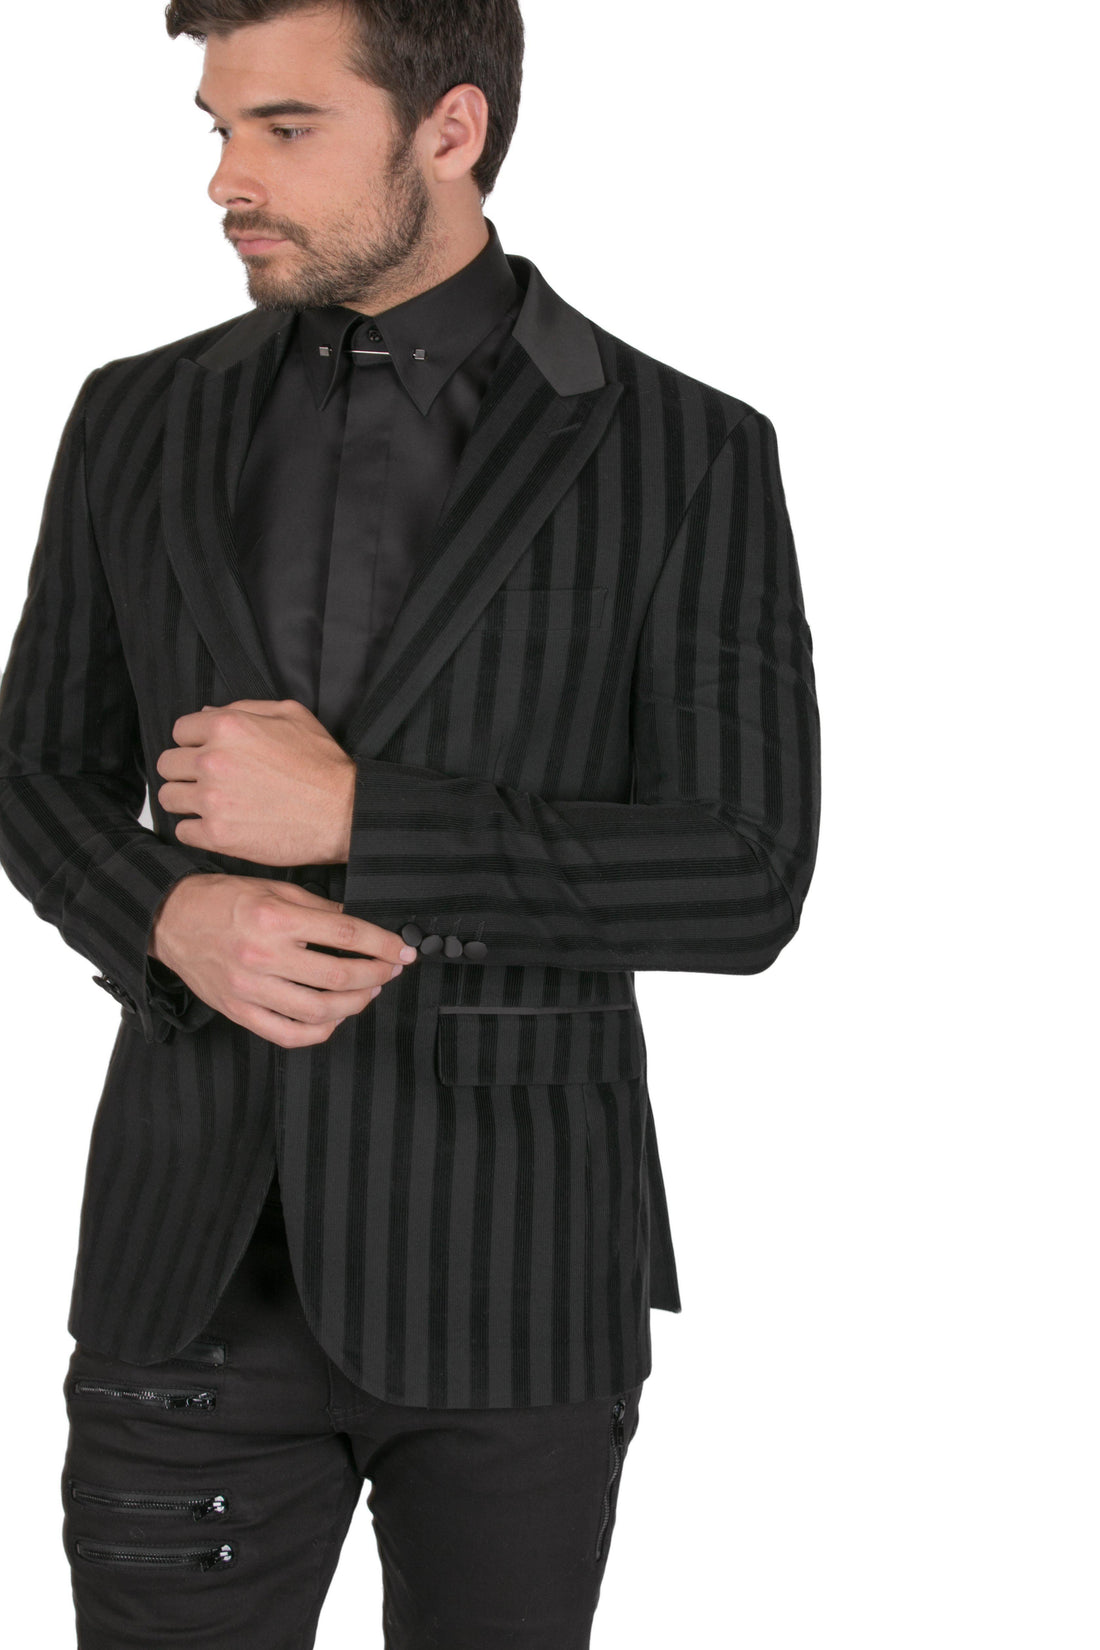 Brushed Striped Italian Velvet Dinner Jacket - Ron Tomson